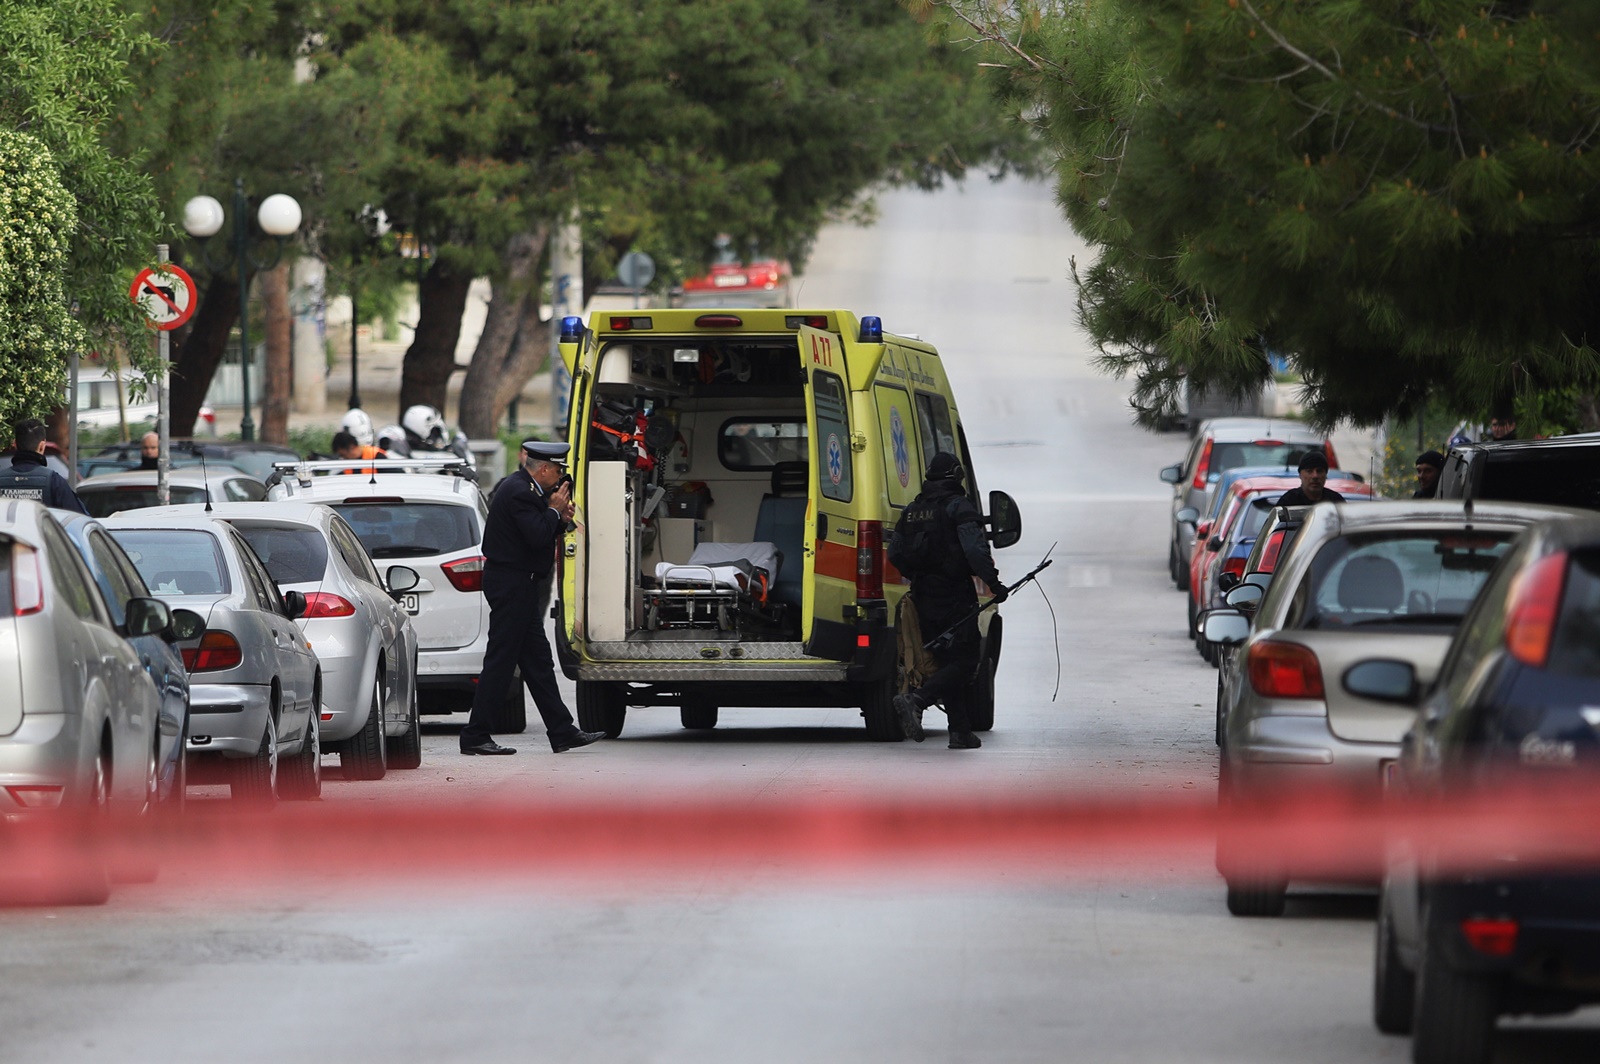 Νίκαια πεθερός σκότωσε τον γαμπρό του: «Βοήθεια, μην τον σκοτώσεις», φώναζε η κόρη του δράστη